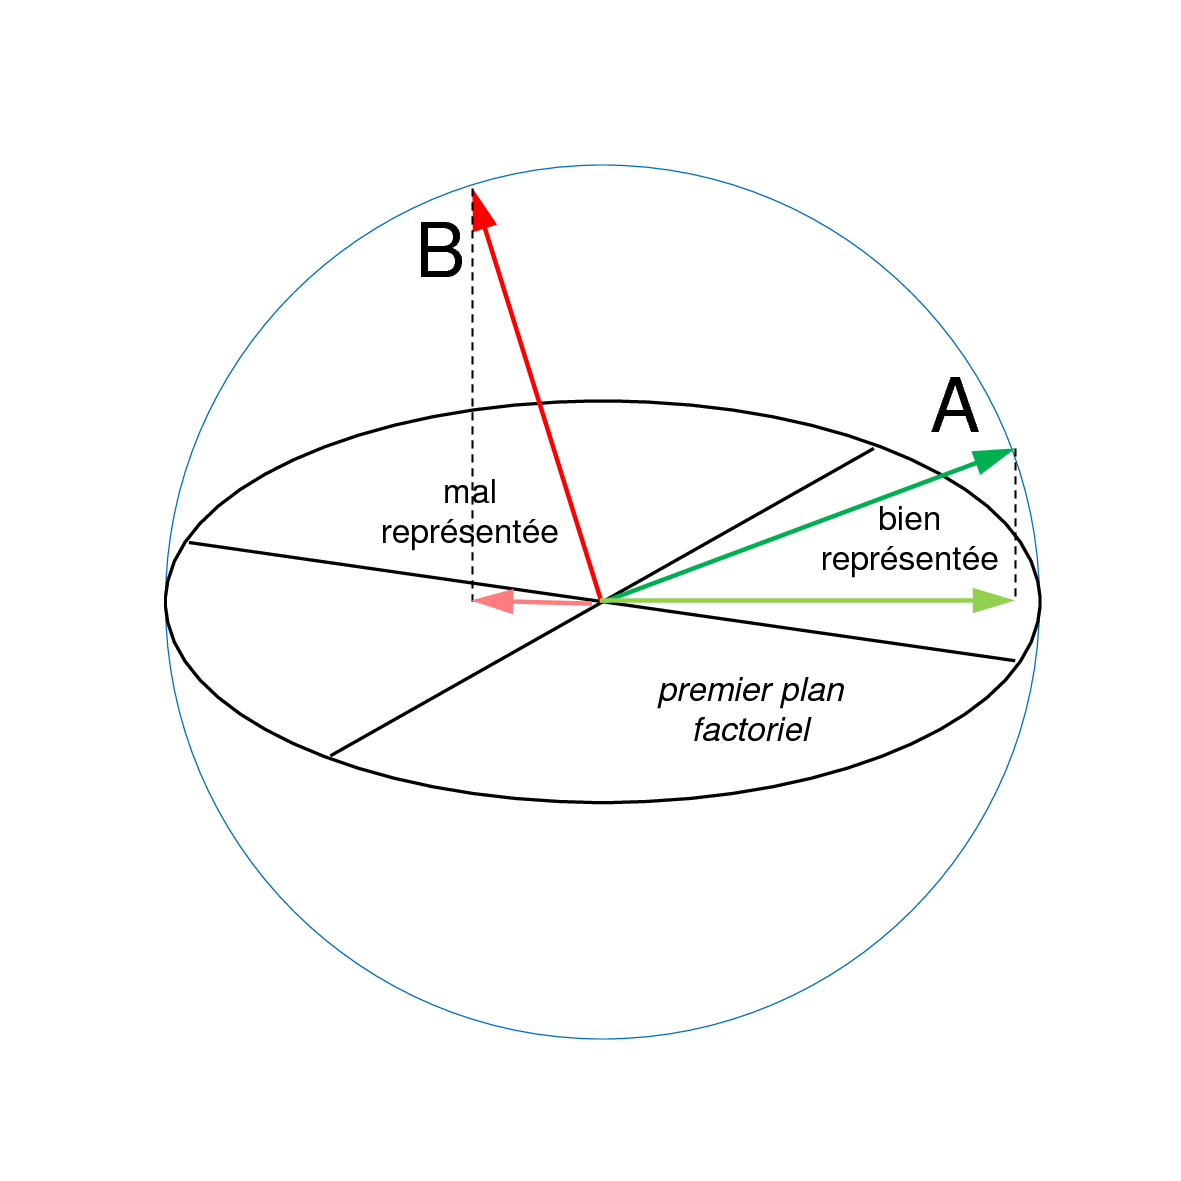 Contribution relative d'un axe dans l'explication de l'inertie d'une variable : dans cet exemple, issu d'une ACP normée, la variable A est bien mieux représentée que B par la projection sur le plan des deux premiers axes principaux